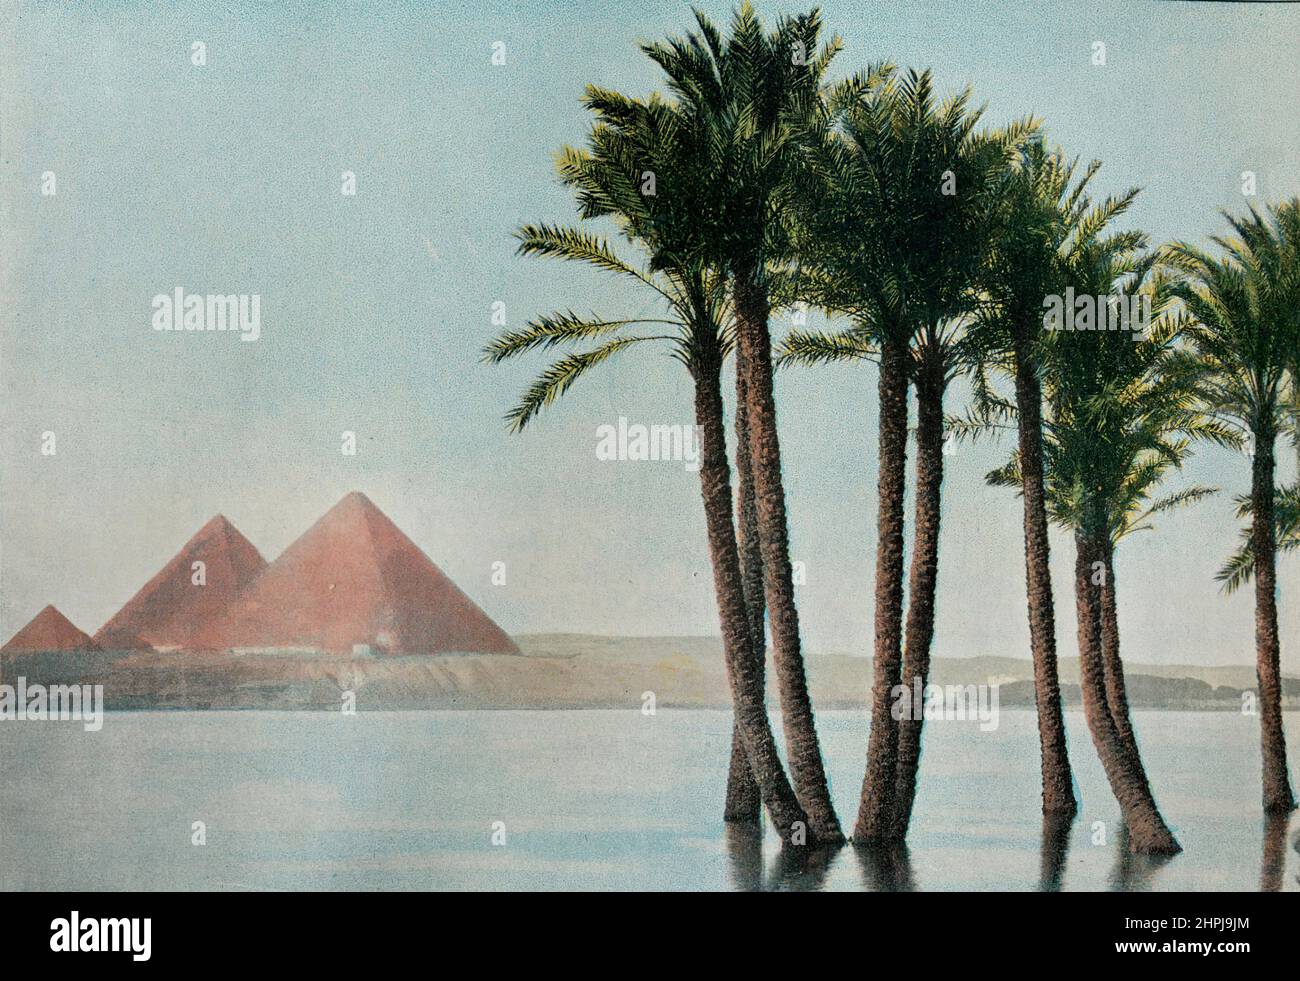 LE SPHINX ET LES PYRAMIDES. Autour Du Monde Egypte Paysages Monuments 1895 - 1900  (3)  - 19 th century french colored photography print Stock Photo